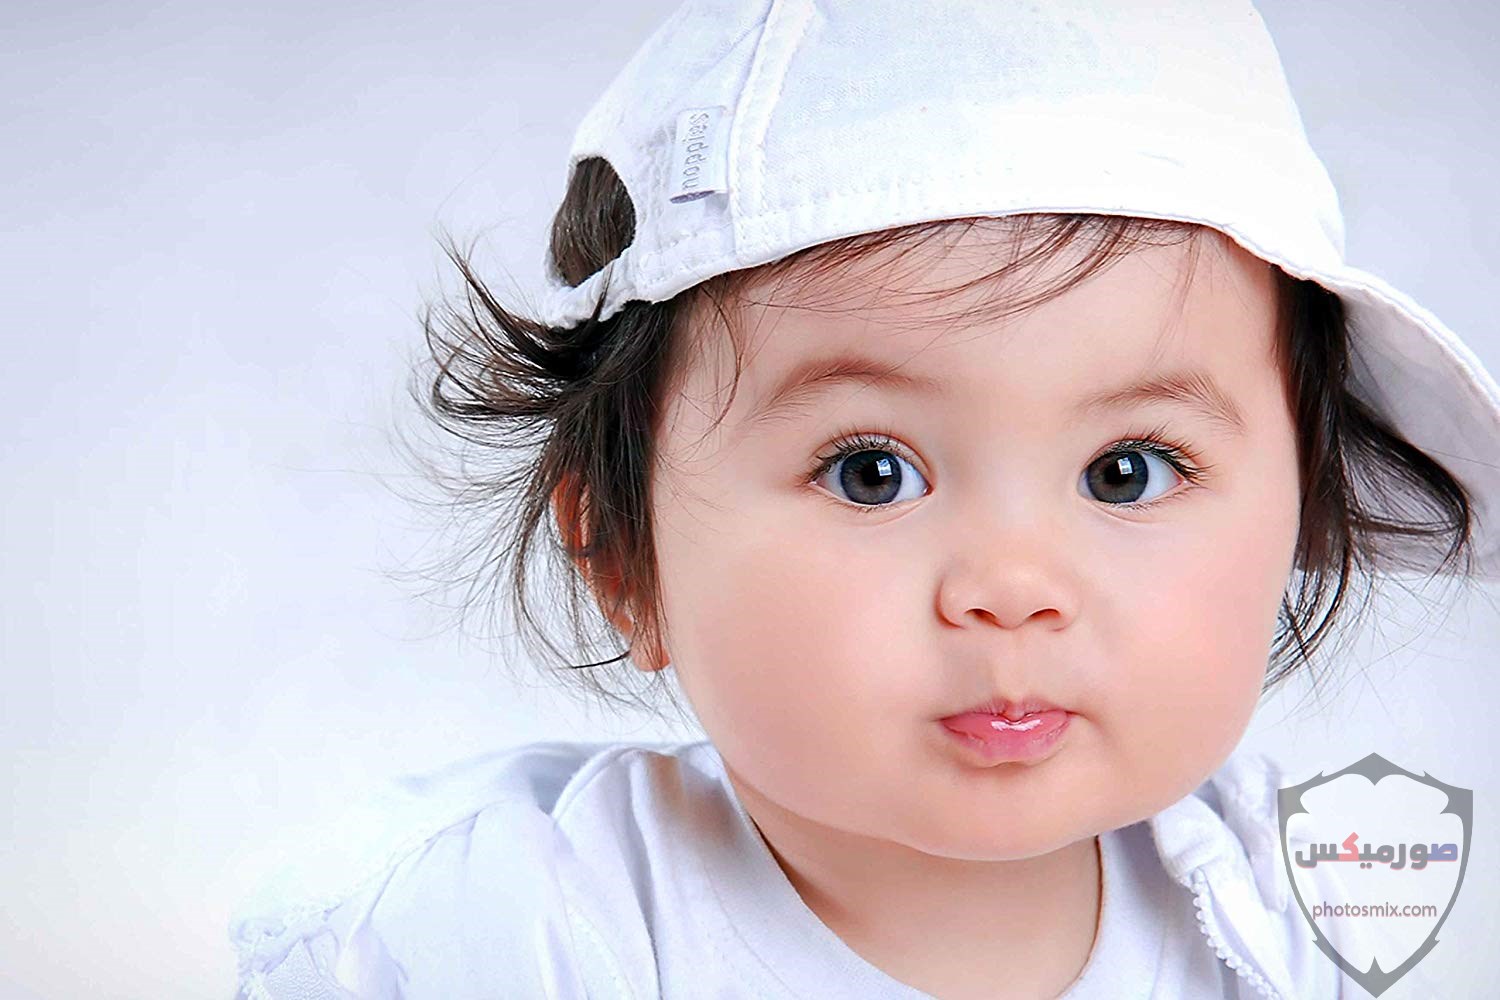 صور اطفال 2021 تحميل اكثر من 100 صور اطفال جميلة صور اطفال روعة 2020 82 1